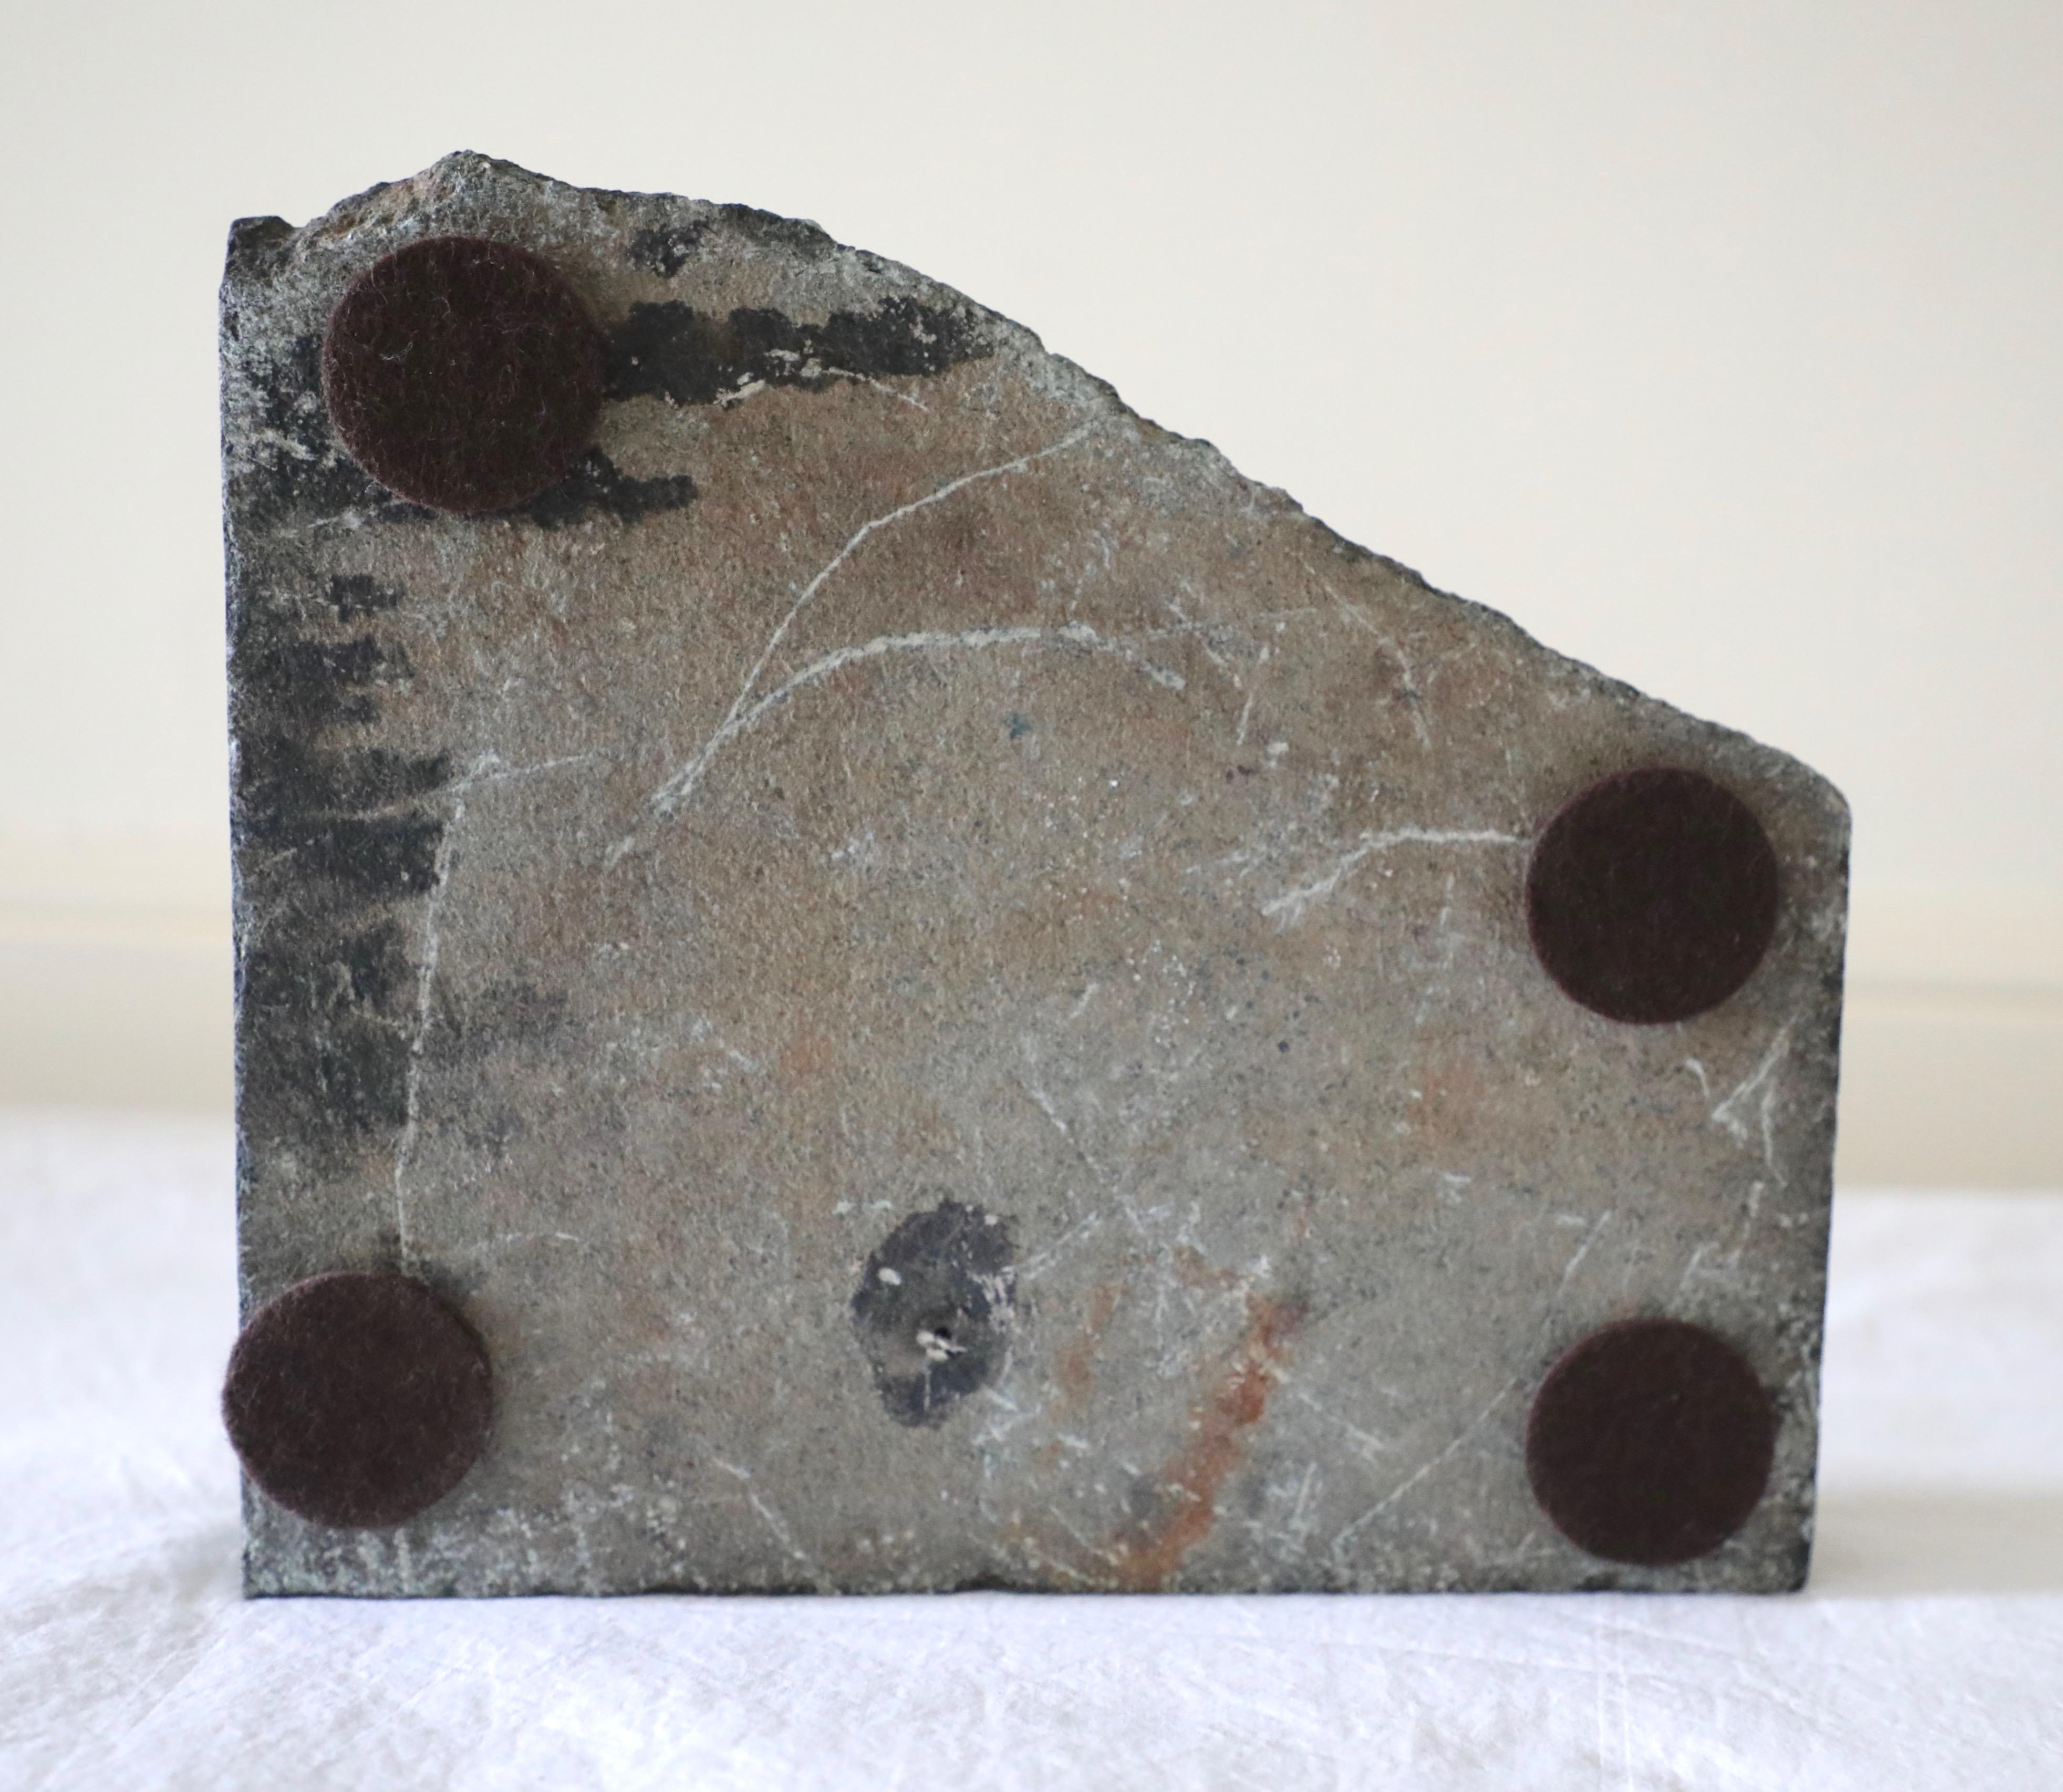 David Breeden, Freeform stone sculpture 1